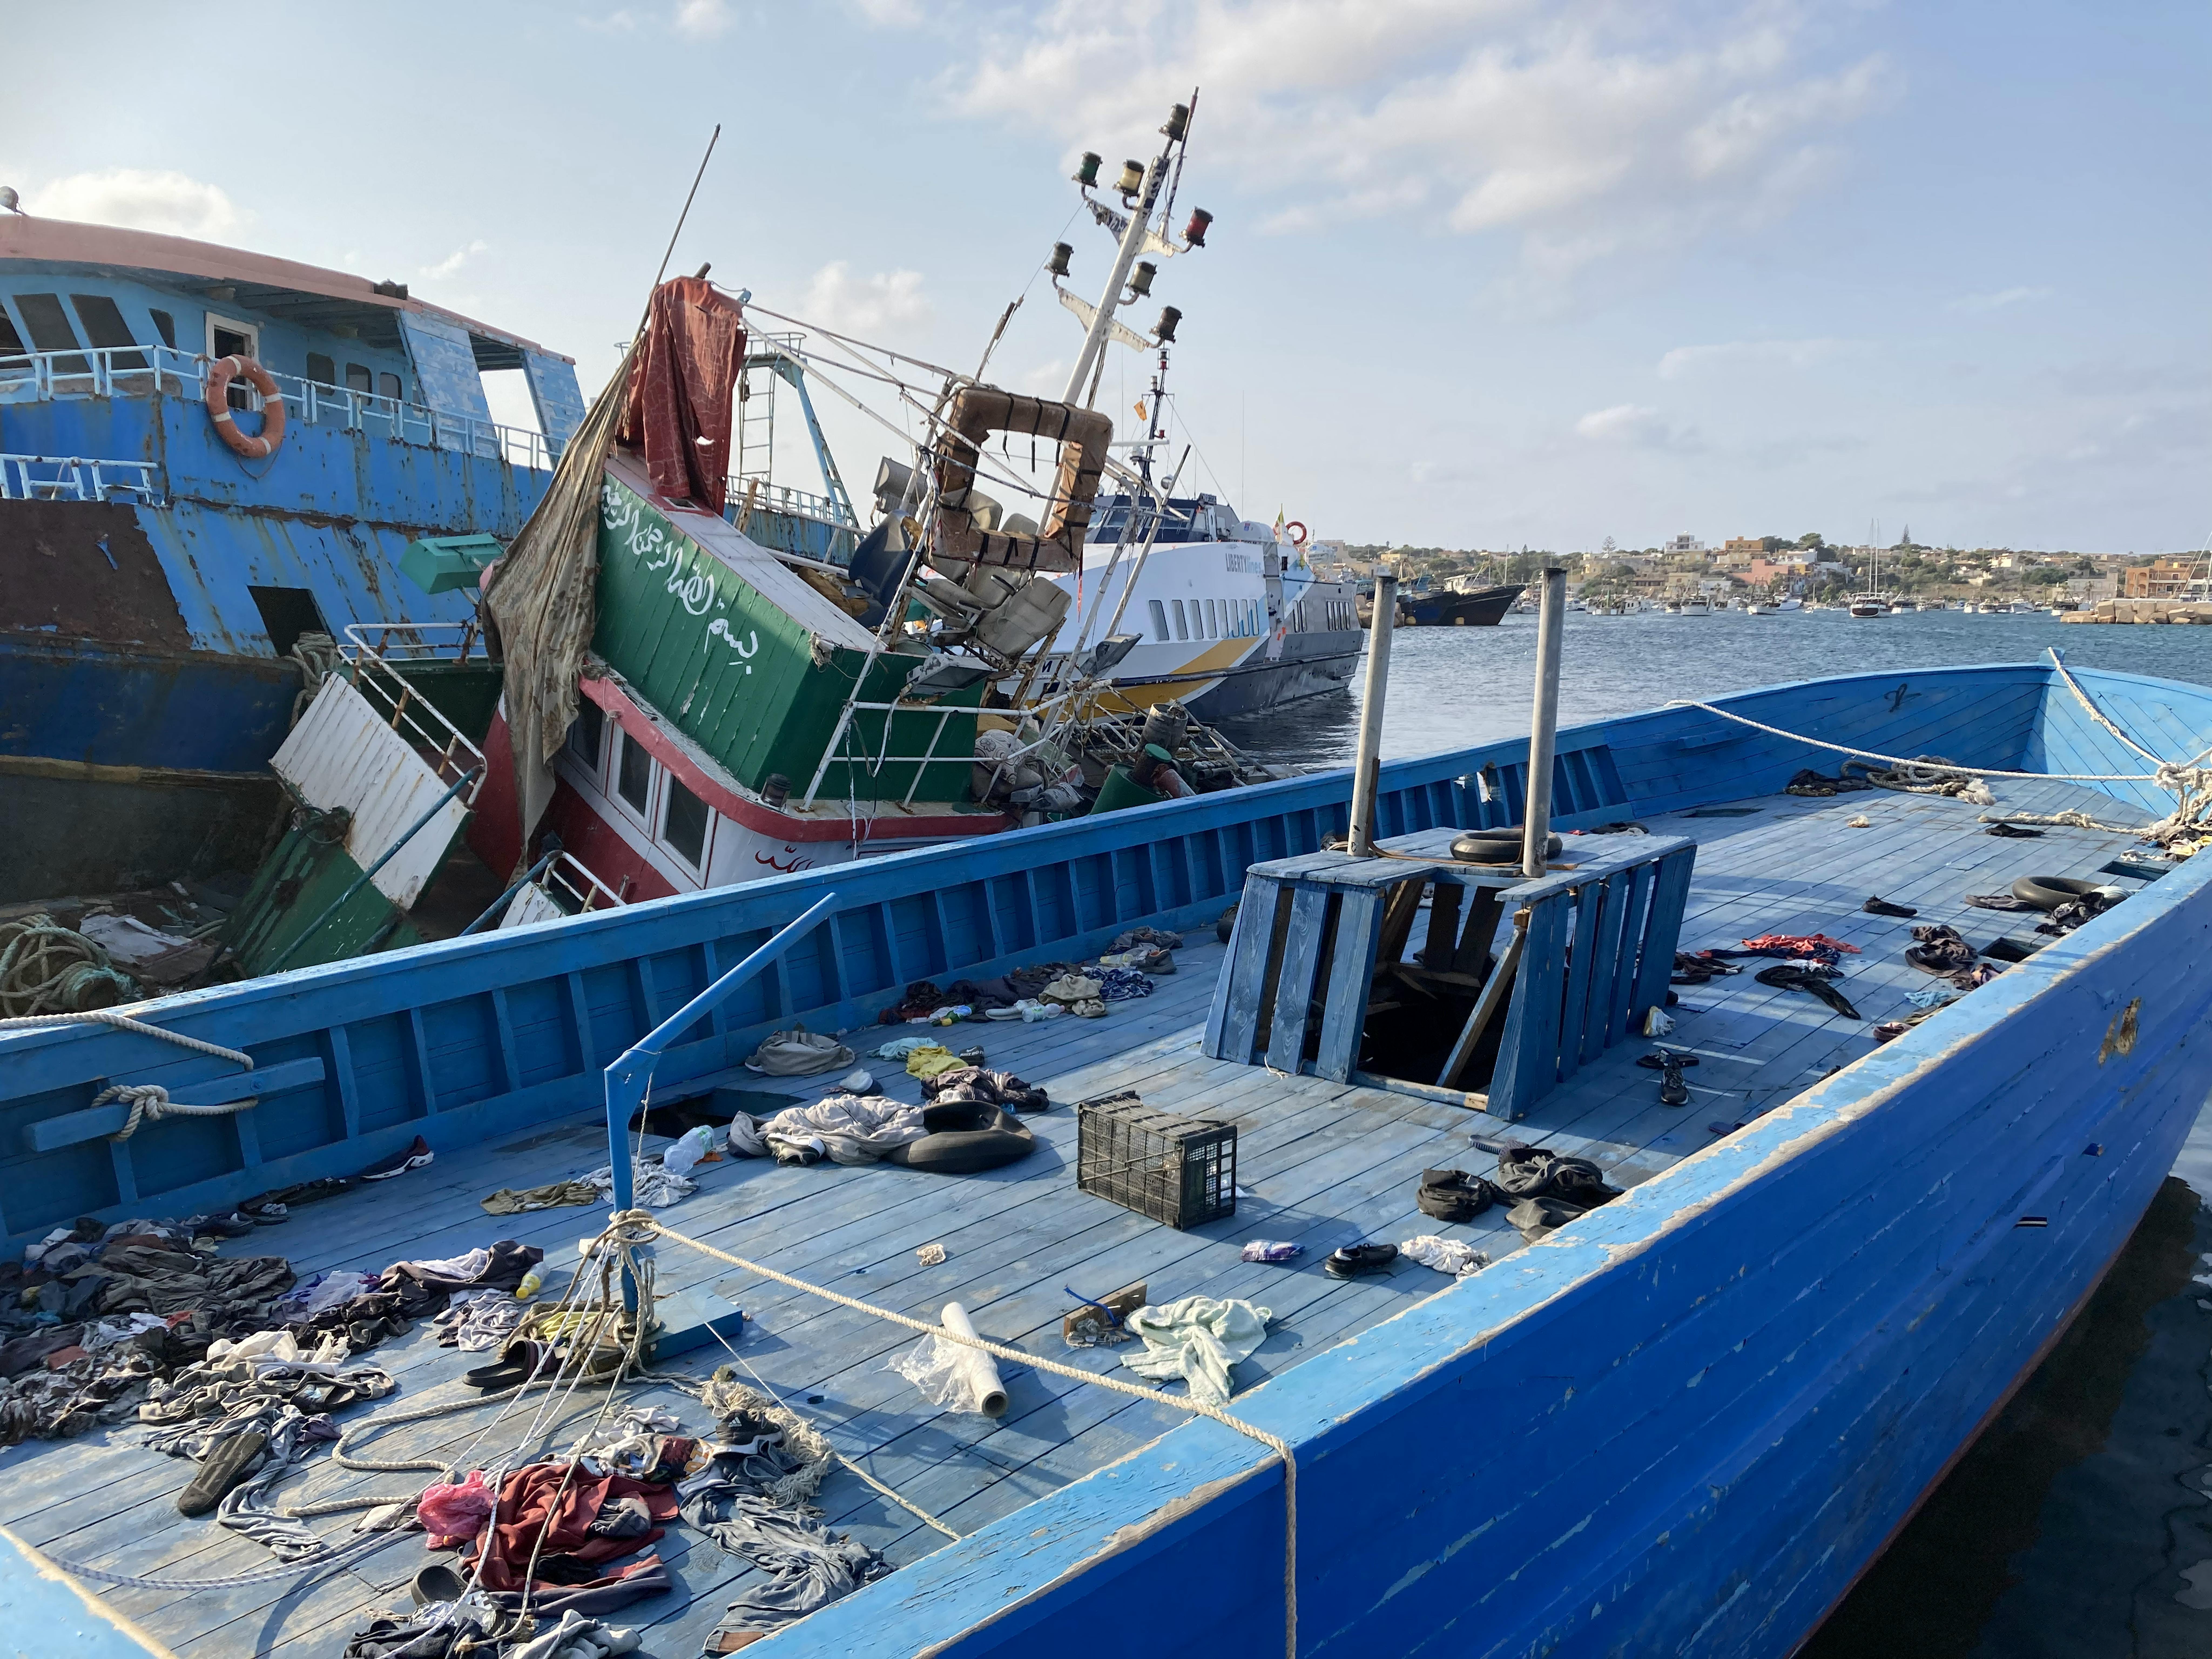 UNICEF/Saturnino/2021 Dettaglio di una delle imbarcazioni al molo di Lampedusa